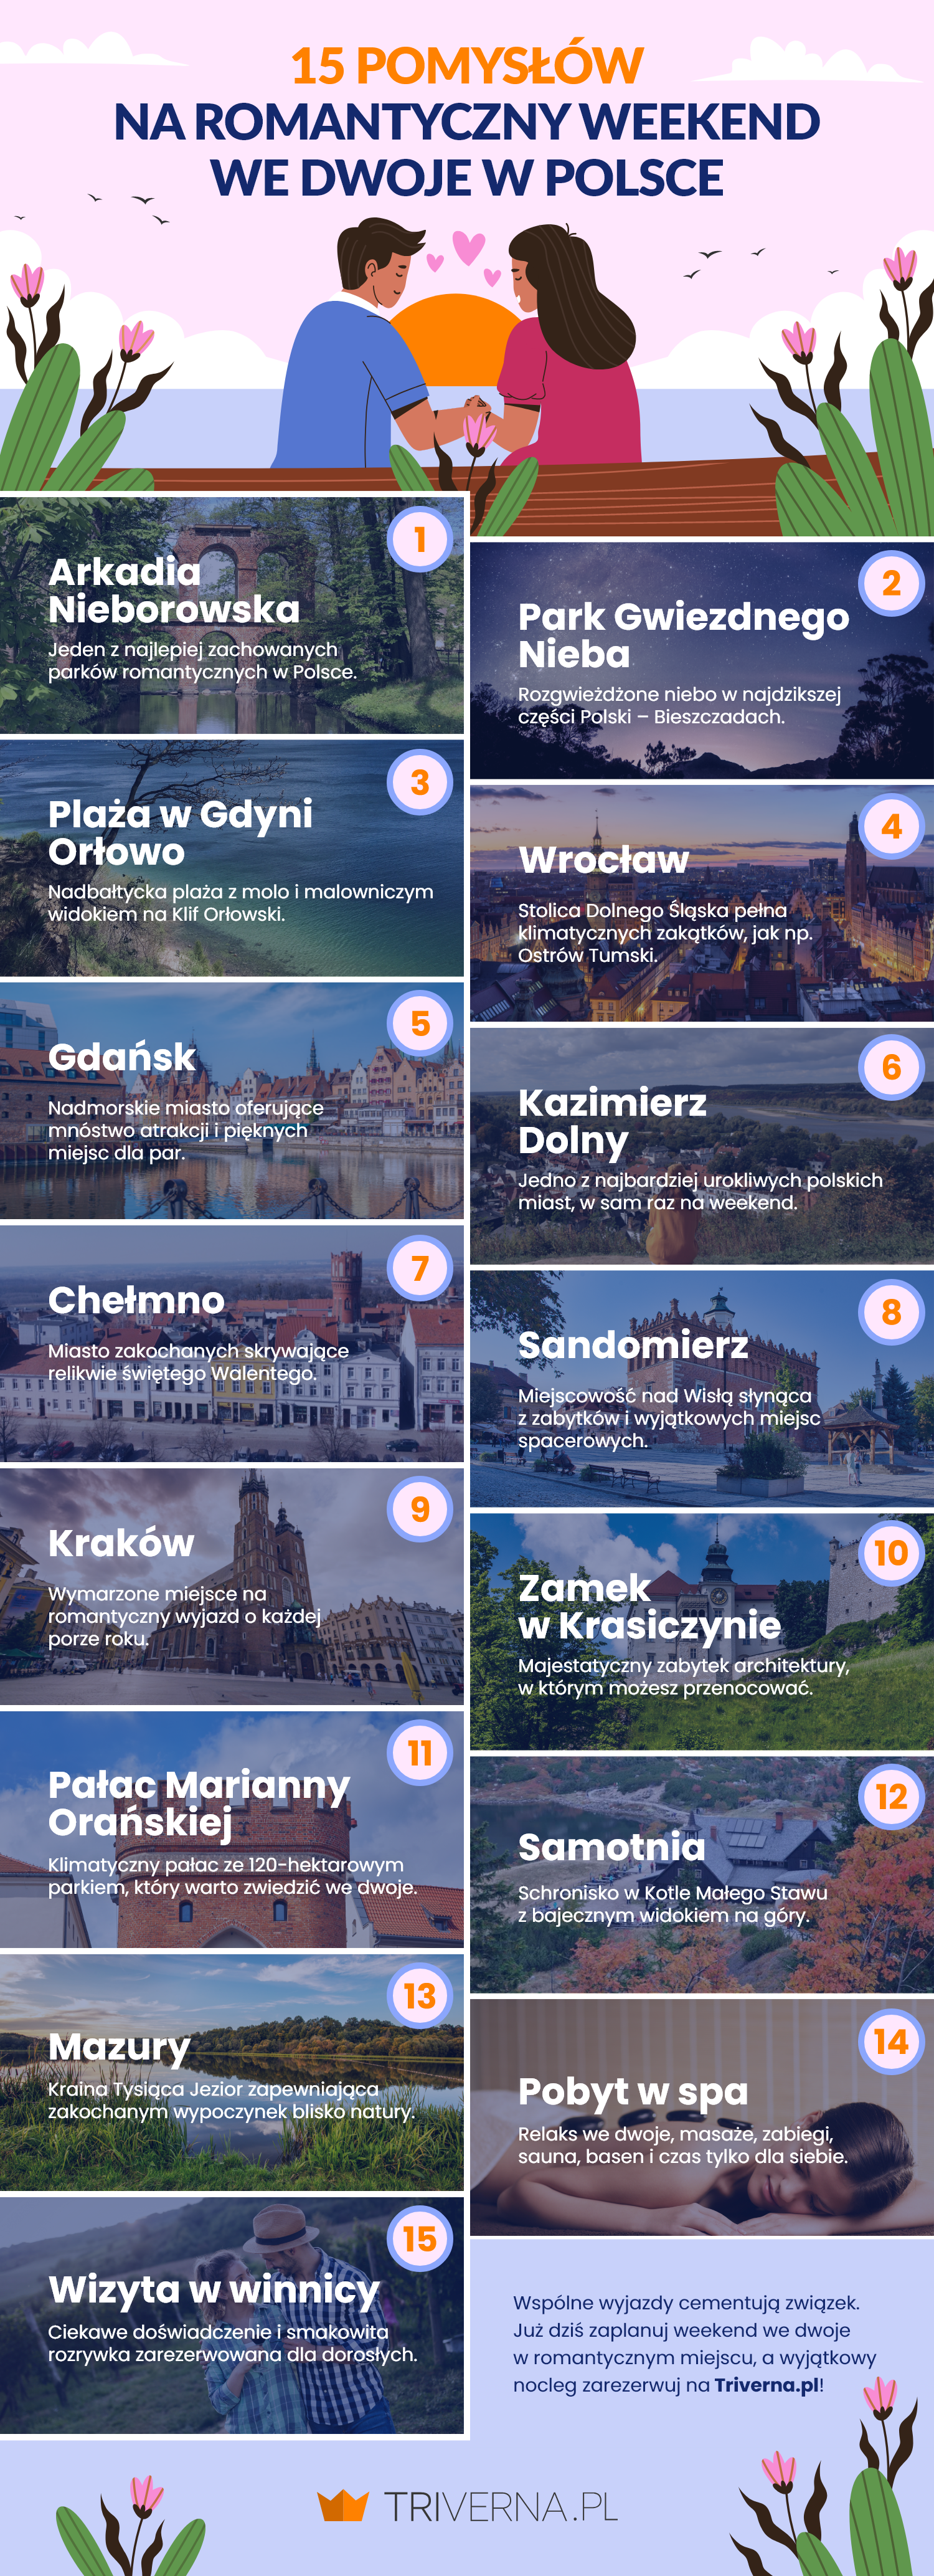 15 pomysłów na romantyczny weekend we dwoje w Polsce - infografika